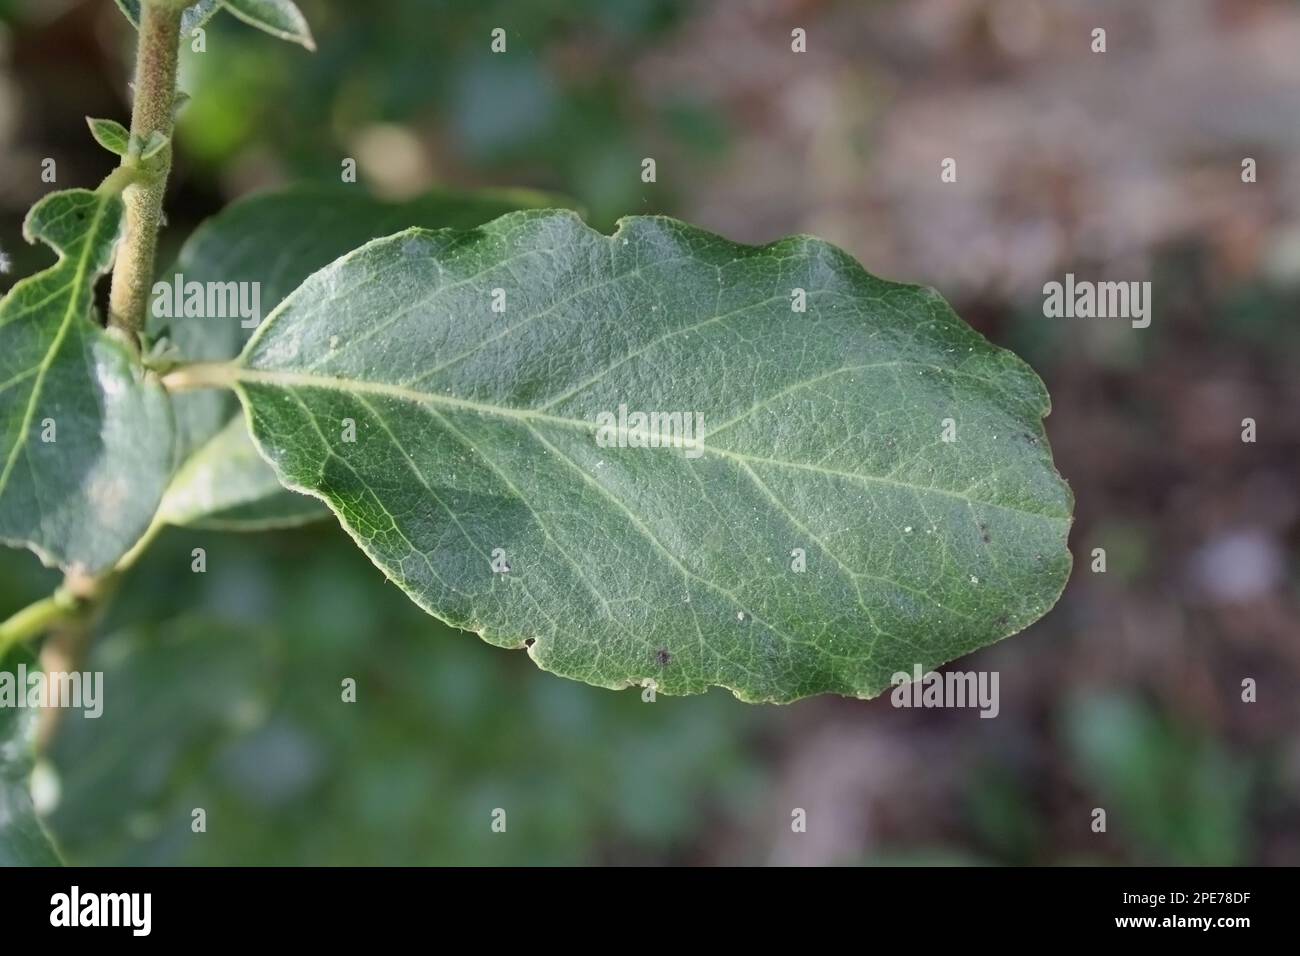 Wavyleaf Silktassle (Garrya elliptica) close-up of leaf, growing in garden, Mendlesham, Suffolk, England, United Kingdom Stock Photo